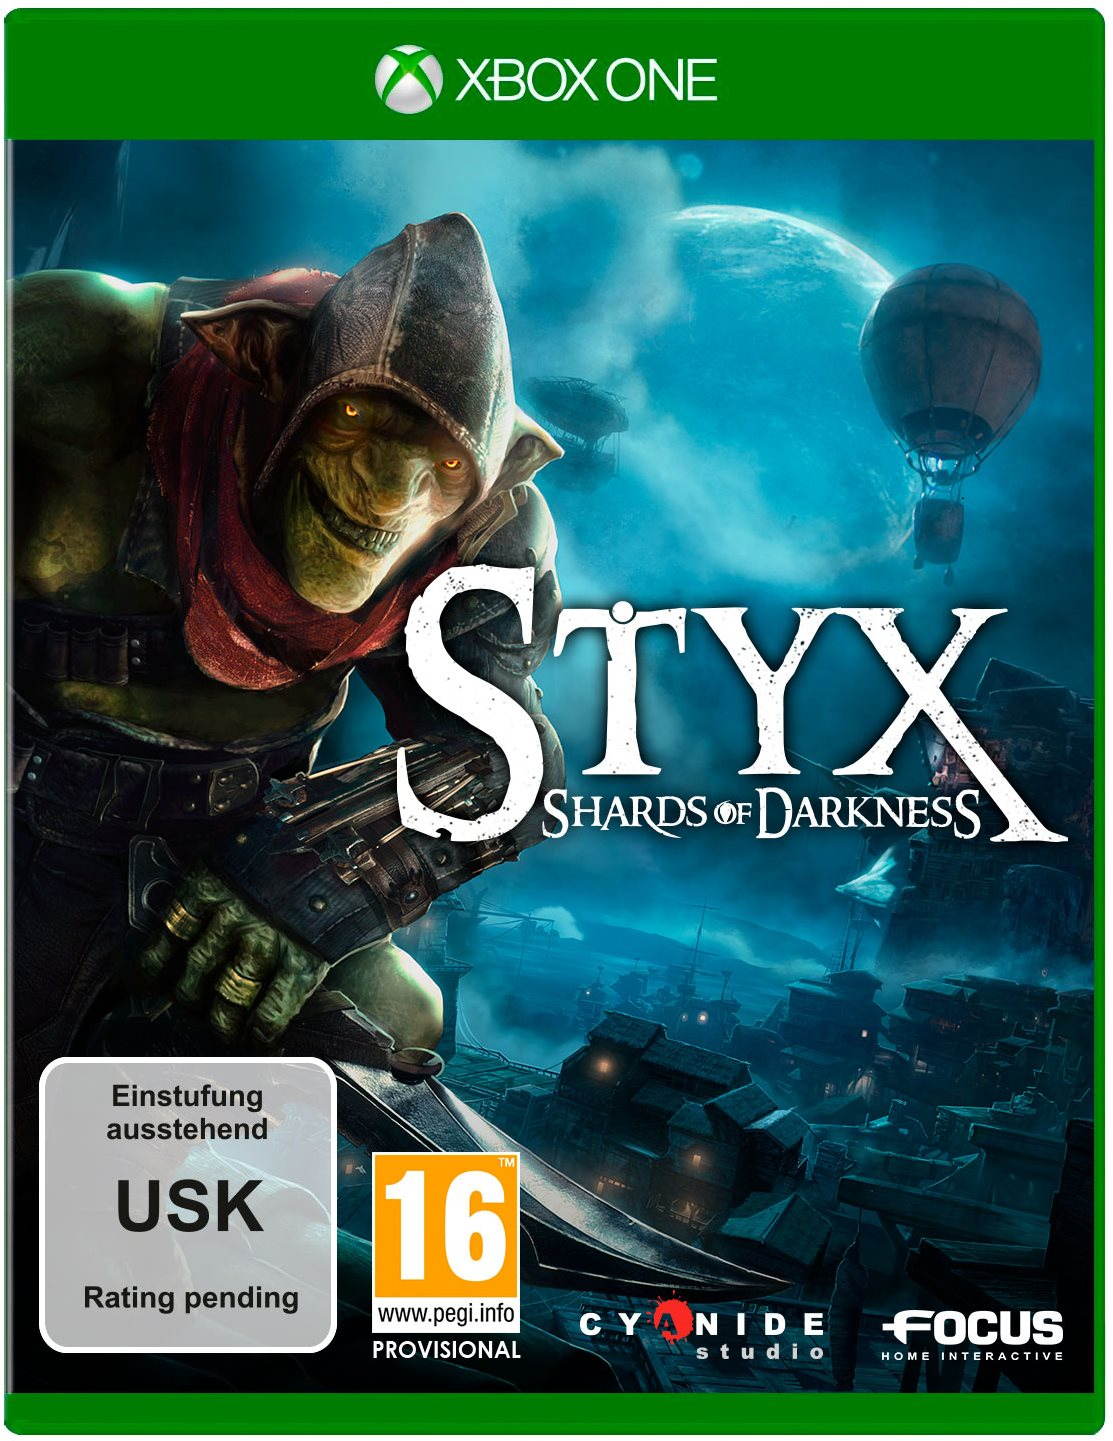 Konzol játék Styx - Shards of Darkness - Xbox ONE